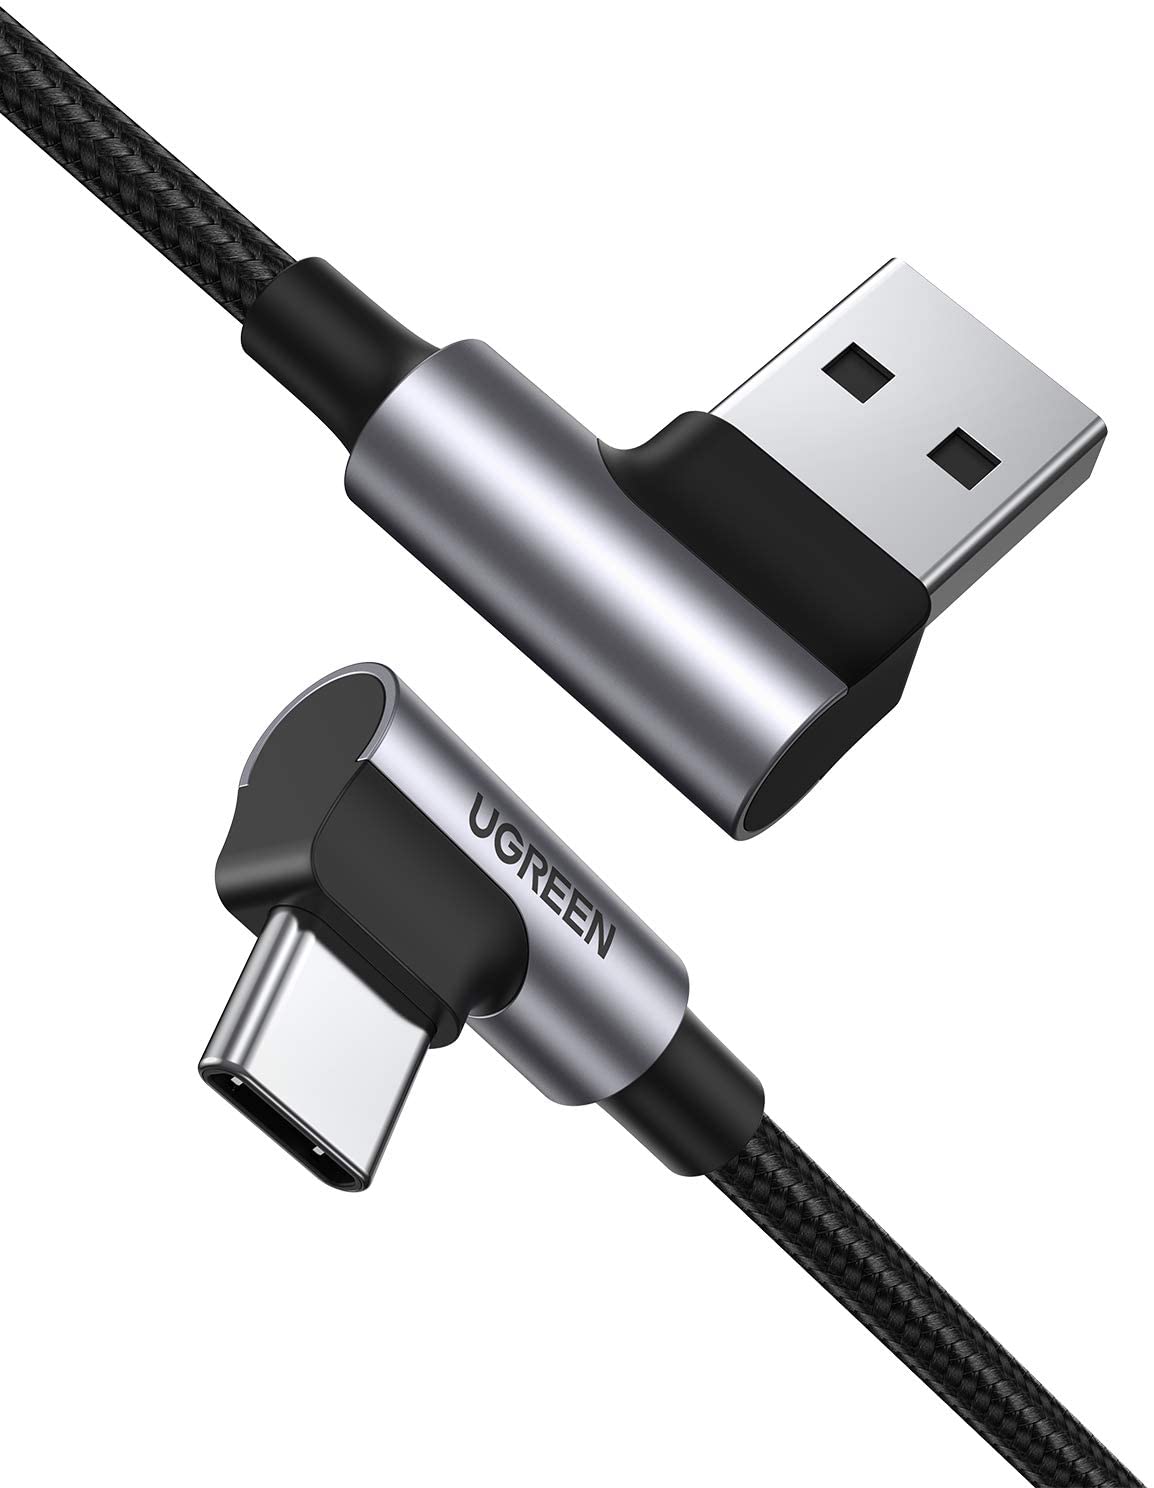  Кабель UGREEN US176 USB 2.0 - USB Type-C, угловой, оплетка, цвет -  серый/черный, длина -  1,5м